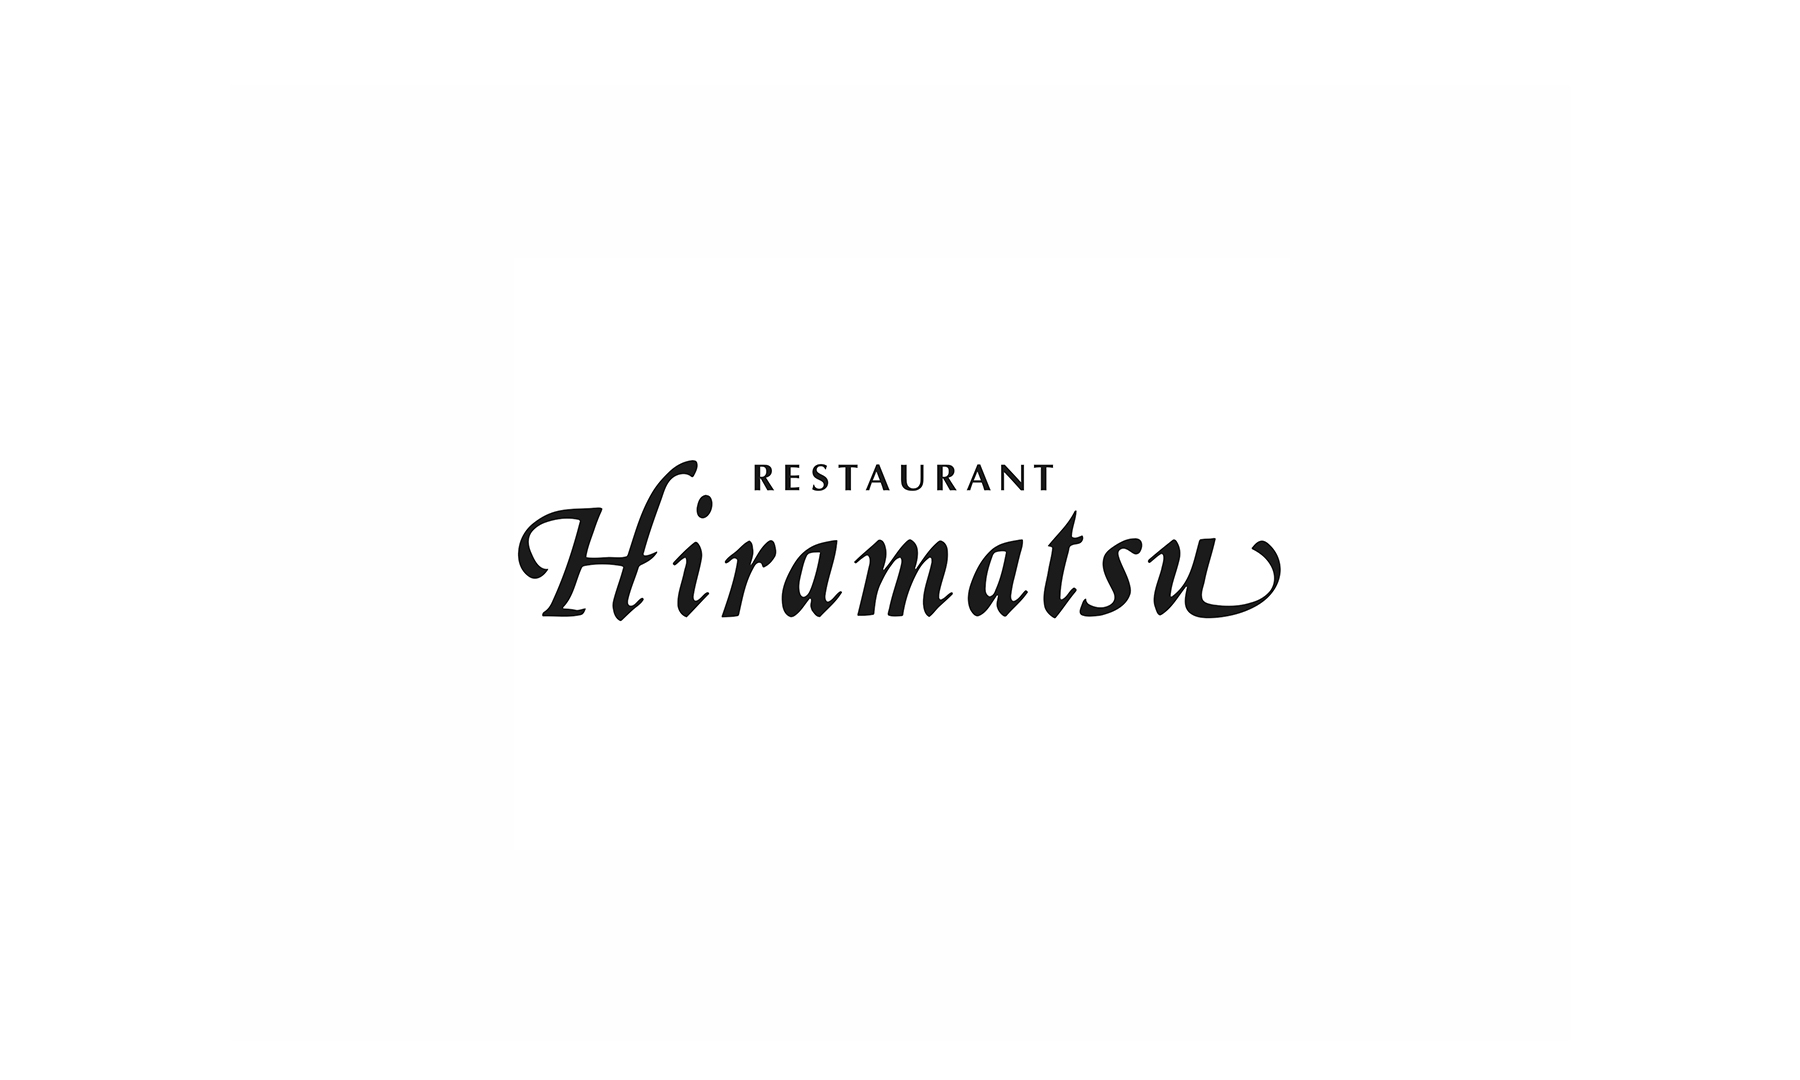 Restaurant Hiramatsu Kodaiji (Transport)'s images1